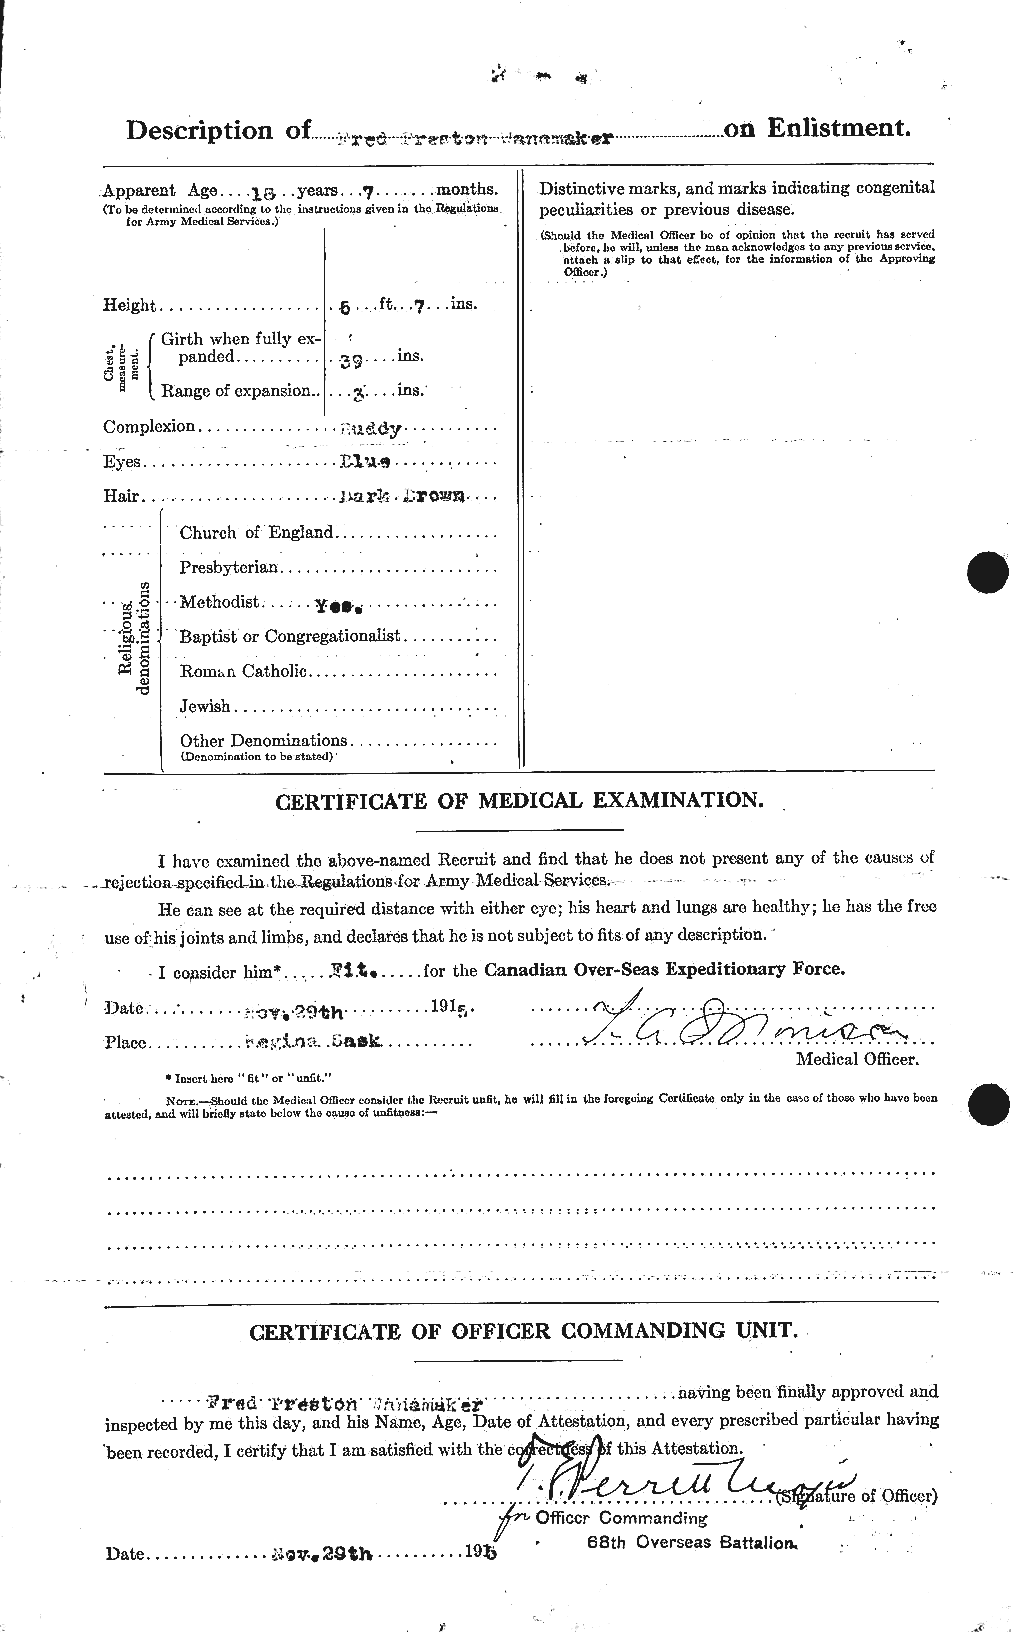 Dossiers du Personnel de la Première Guerre mondiale - CEC 654906b